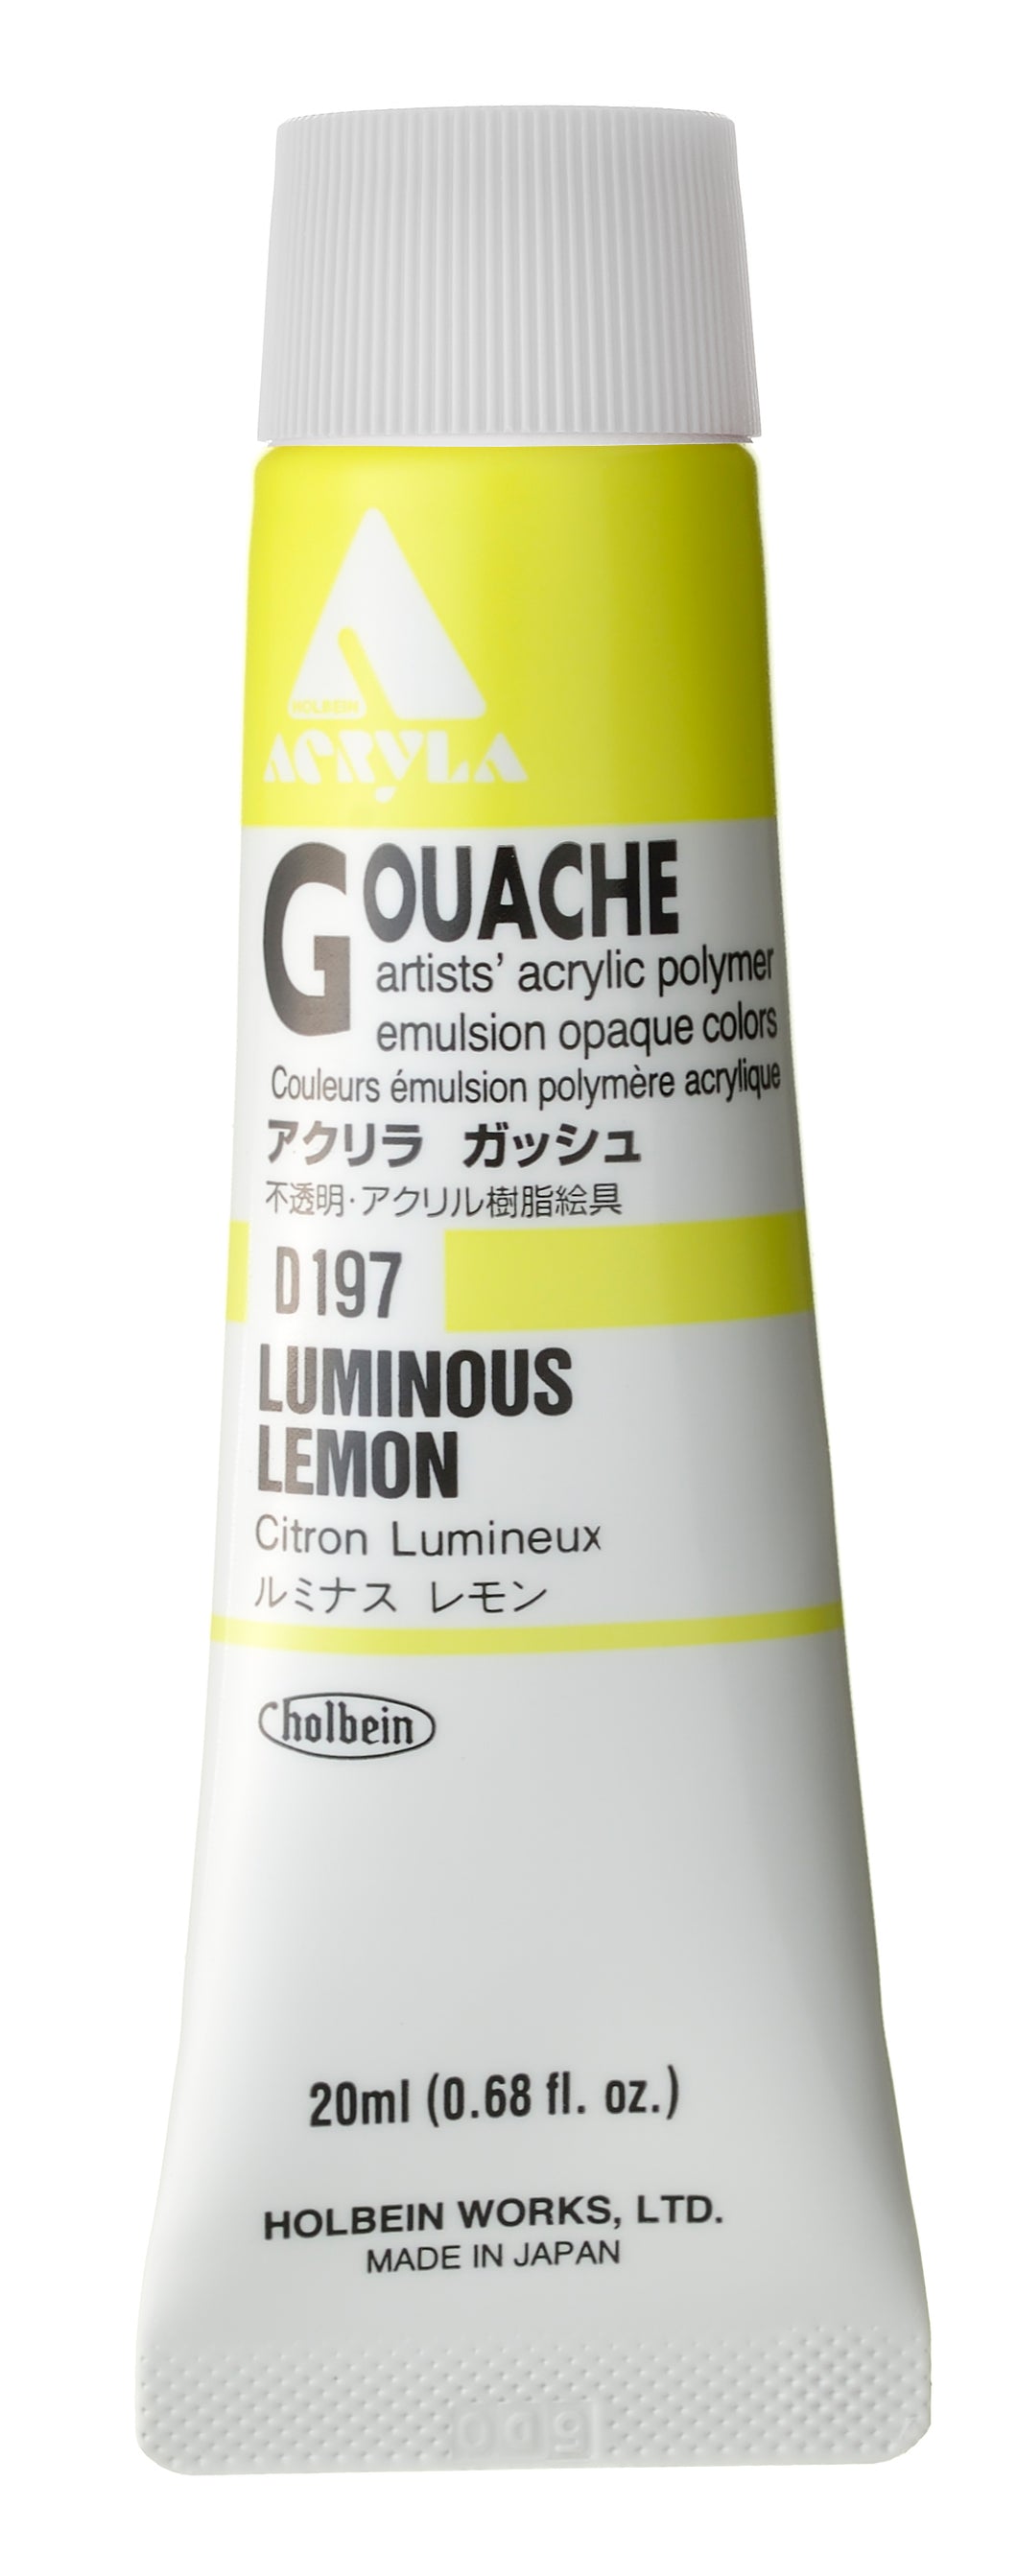 Holbein Acryla Gouache- Luminous Lemon (D197)